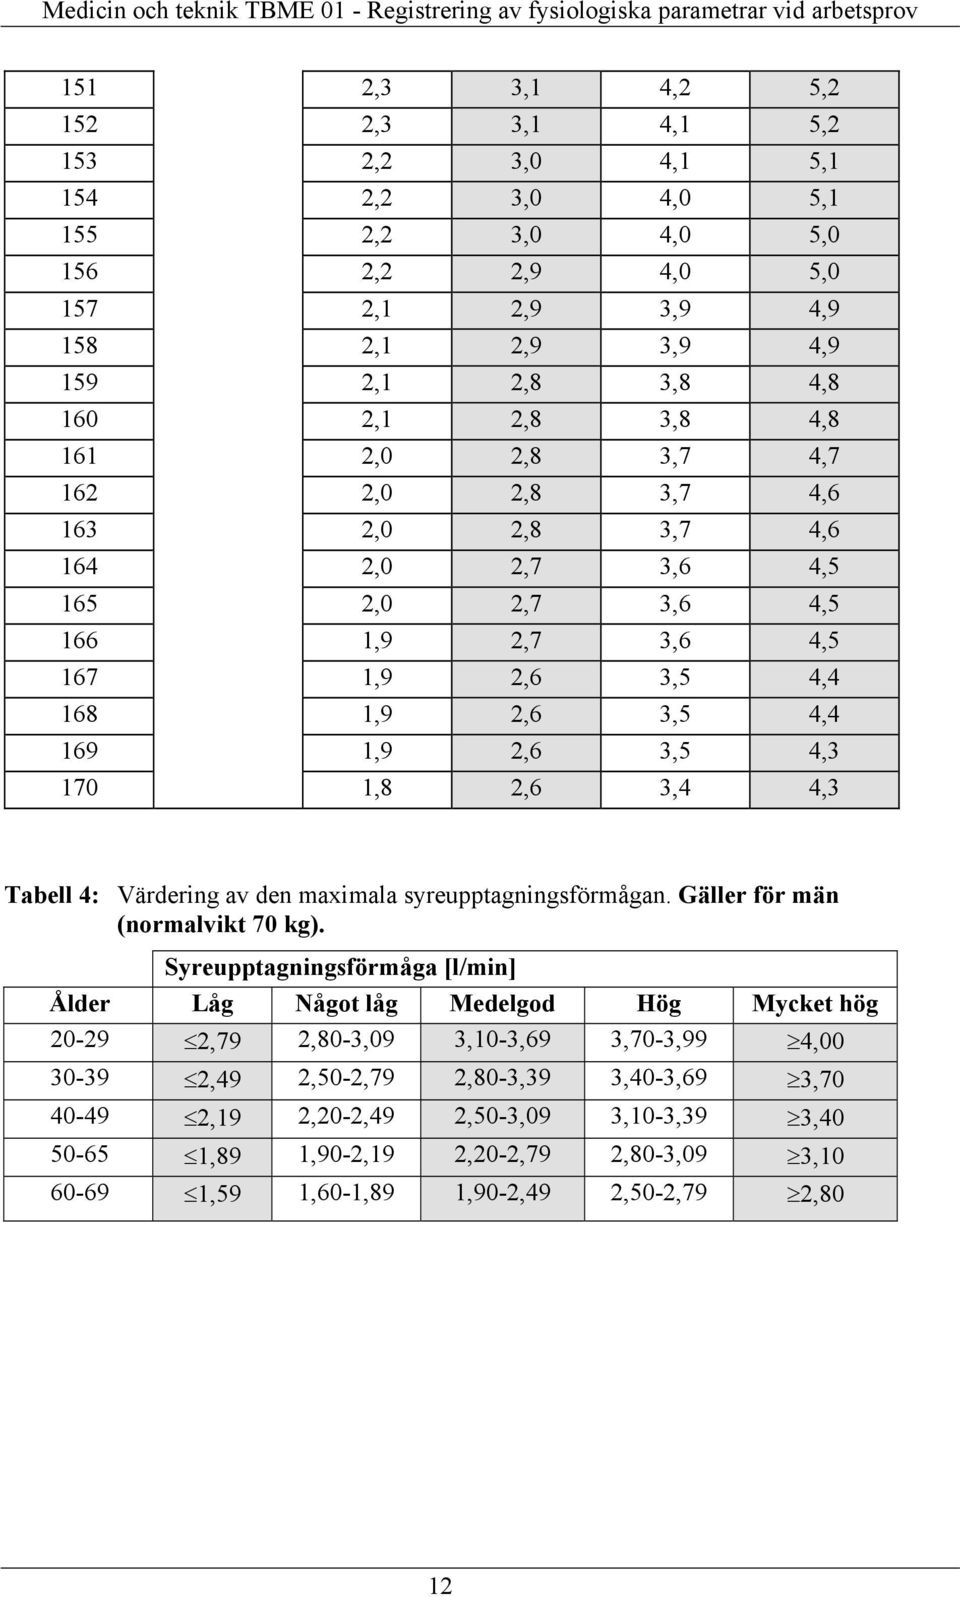 Tabell 4: Värdering av den maximala syreupptagningsförmågan. Gäller för män (normalvikt 70 kg).